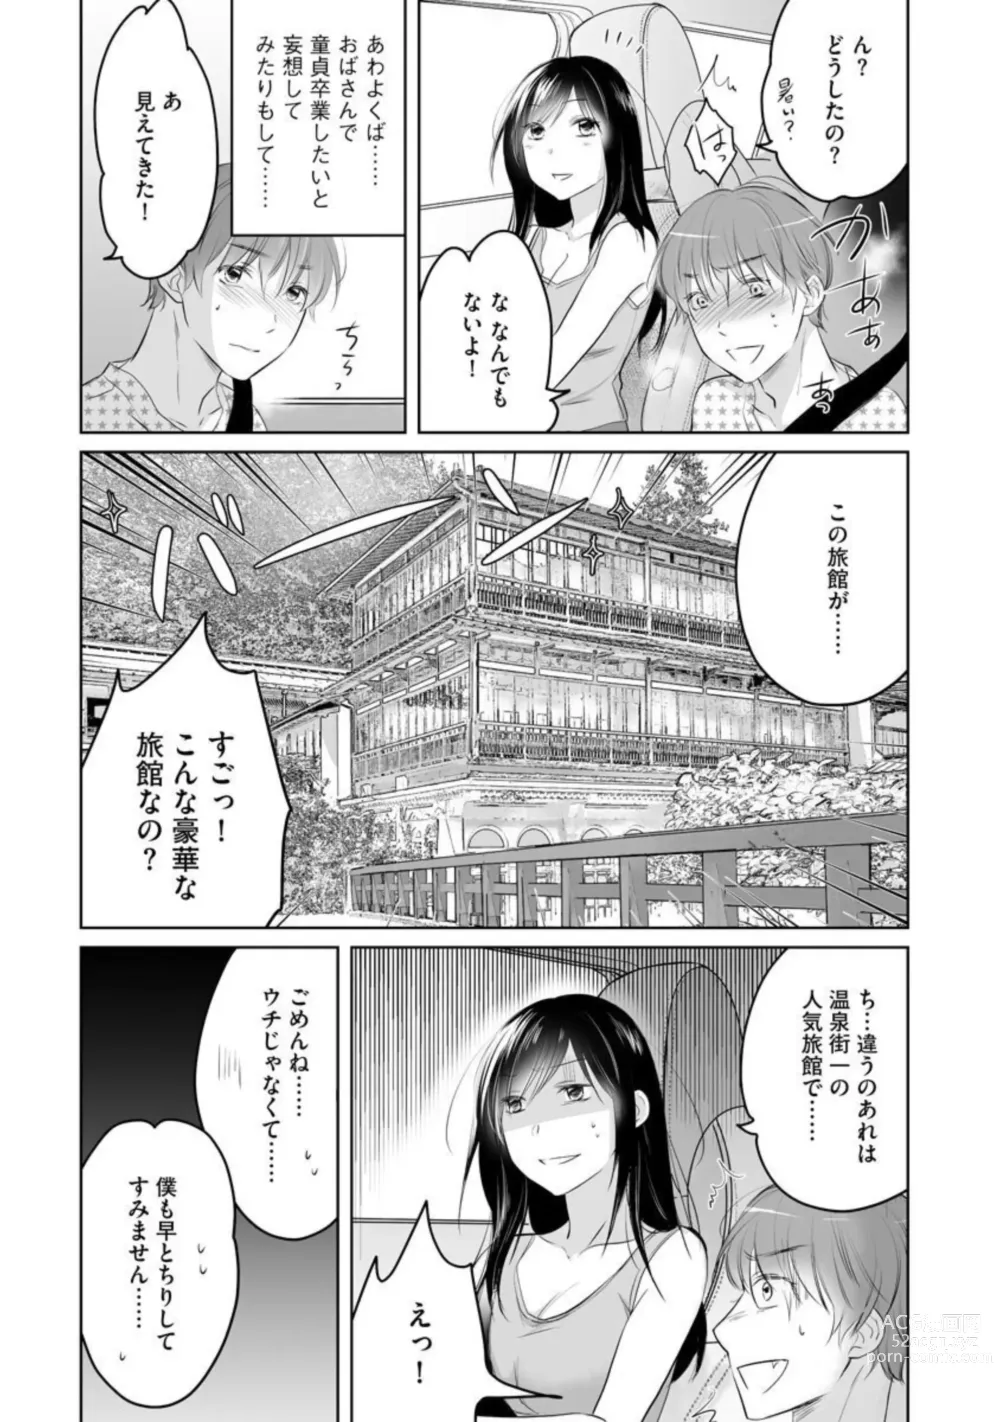 Page 7 of manga Nozoki ana oba to Boku no Himitsu no Natsuyasumi 1-2